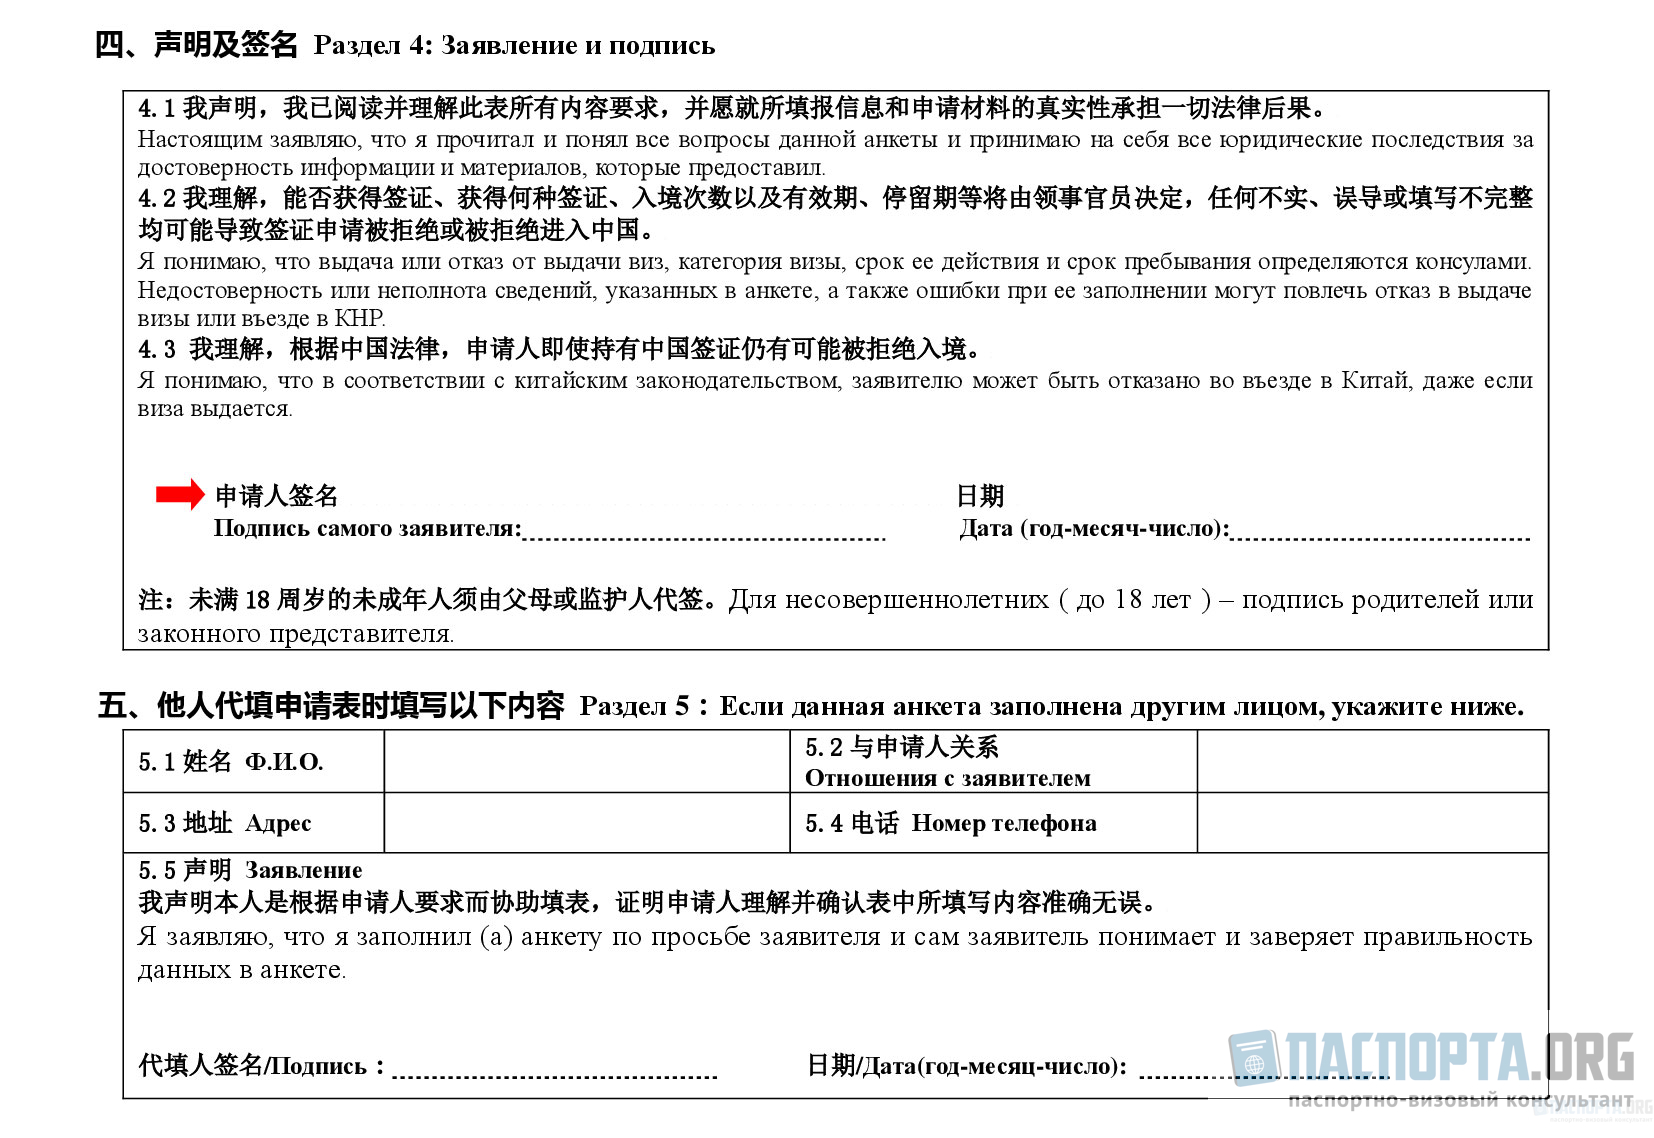 Фото на визу в китай в 2022 году: требования, заполнение анкеты с образцами